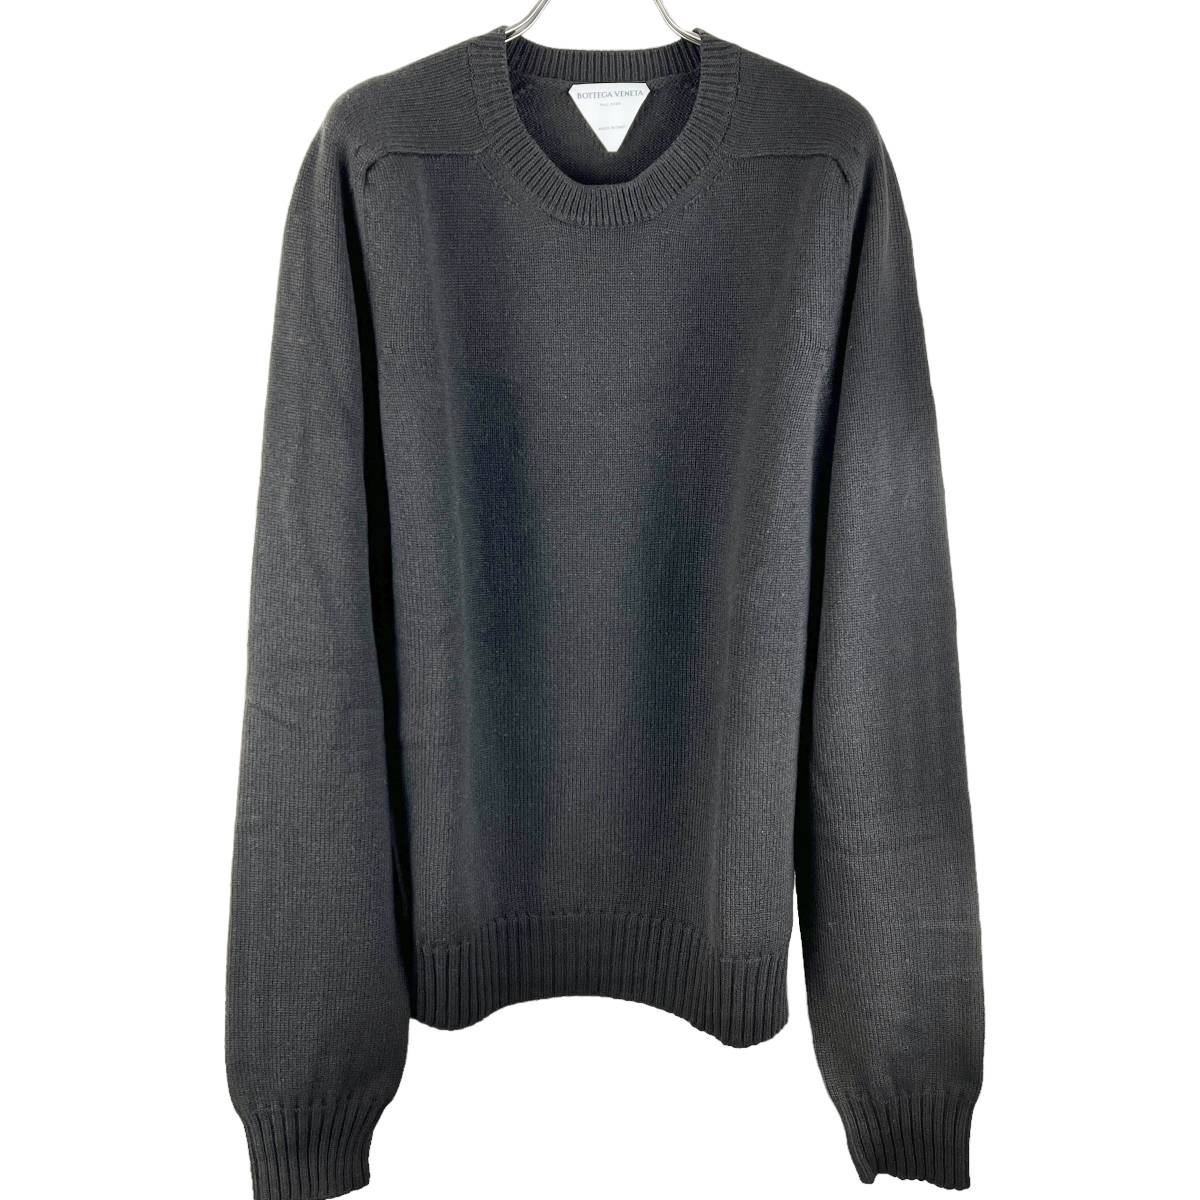 Bottega Veneta(ボッテガ ヴェネタ) Wool Pull Sweater Knit 2020AW (brown)